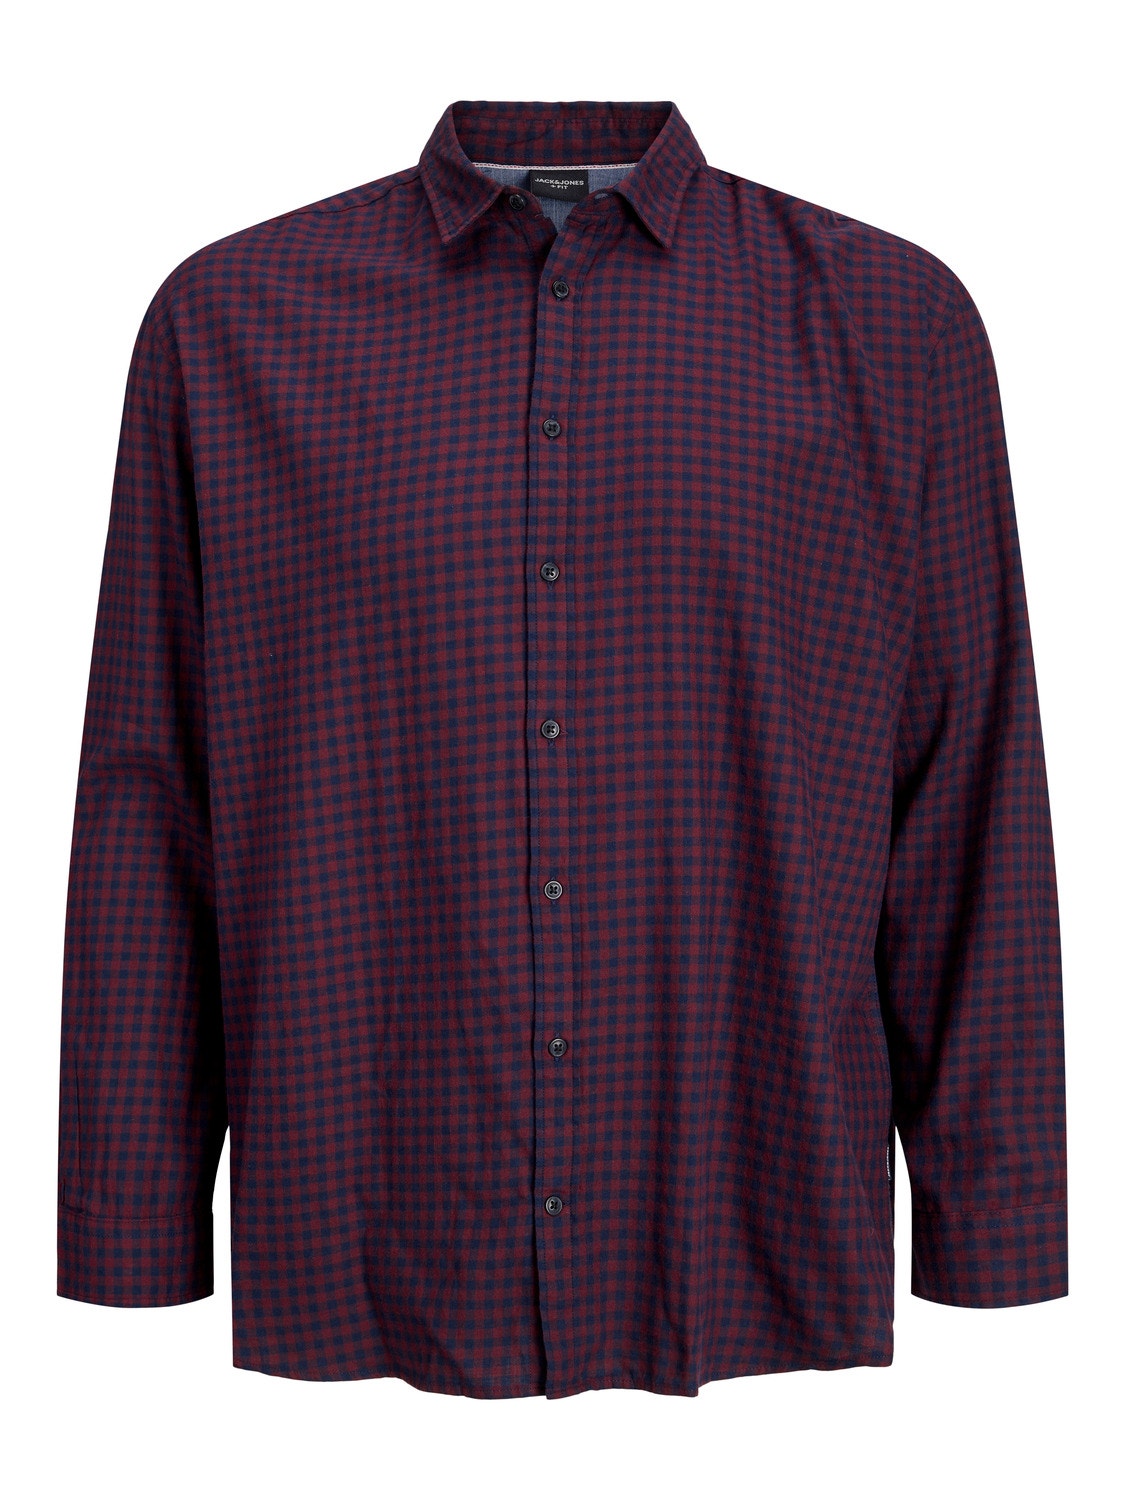 Jack & Jones Plus Size Loose Fit Ruudullinen paita -Navy Blazer - 12183107